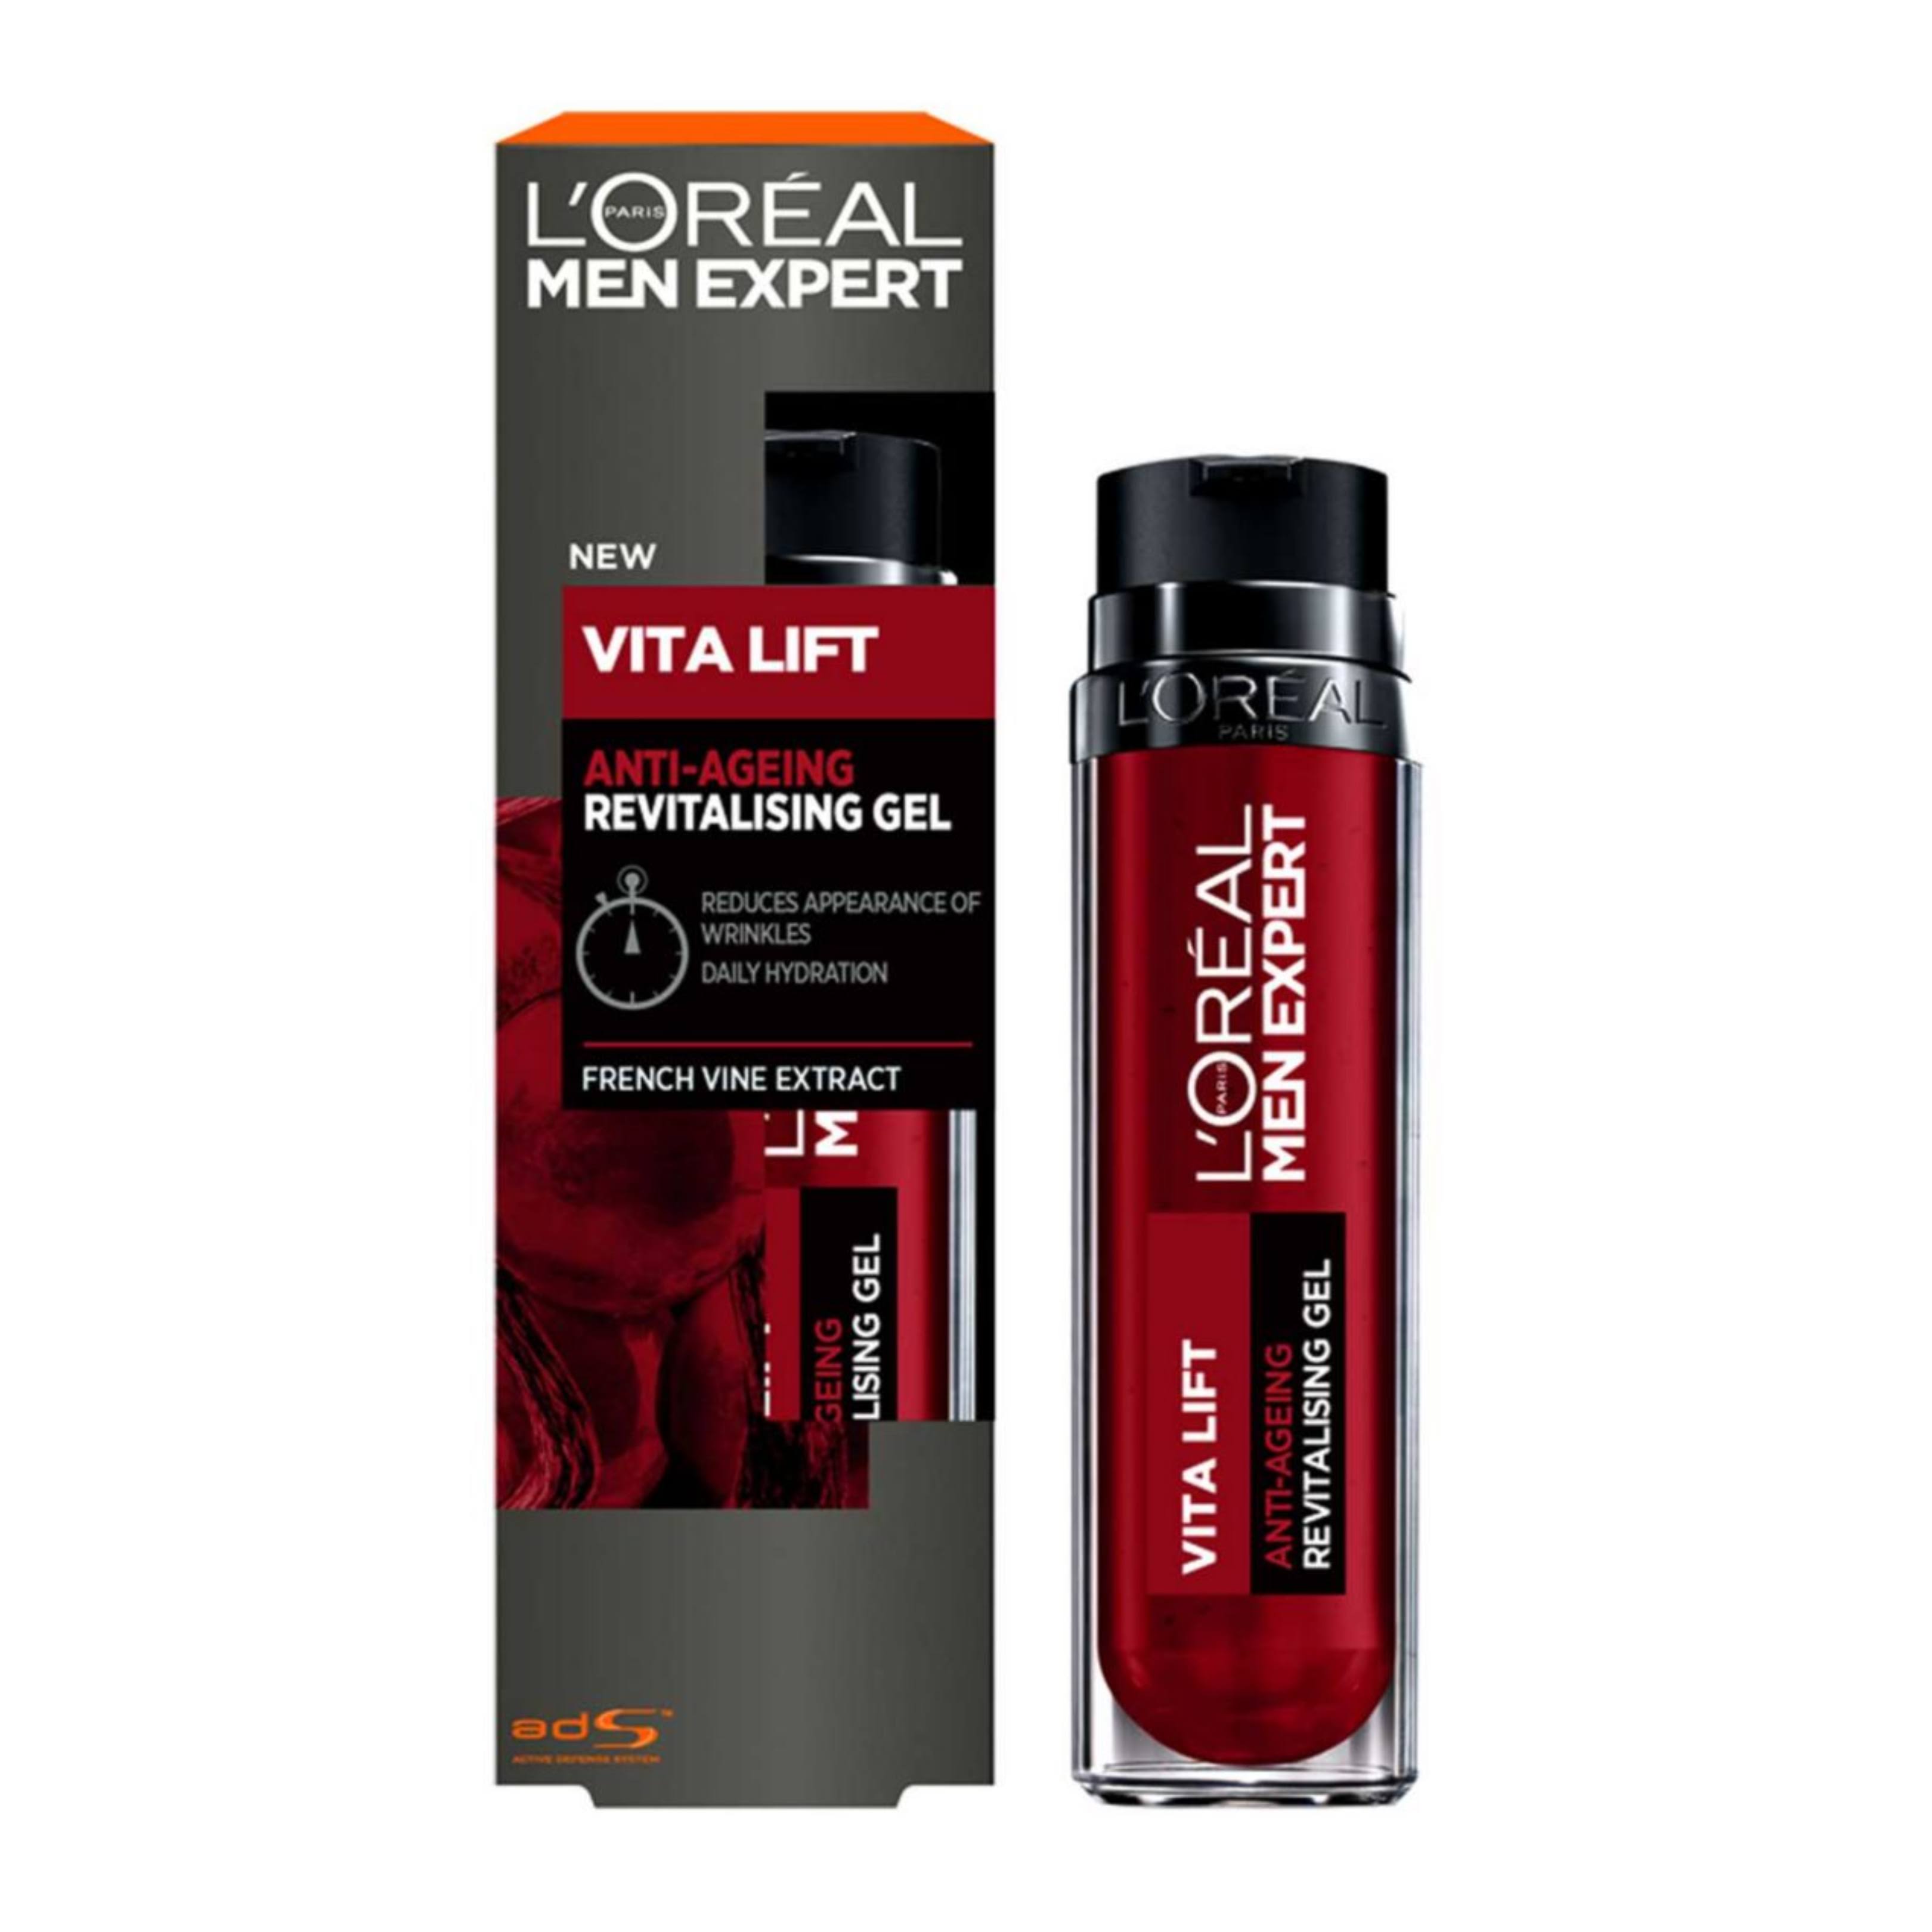 L'Oreal Men Expert Vita Lift Anti Wrinkle Gel Moisturiser 50ml